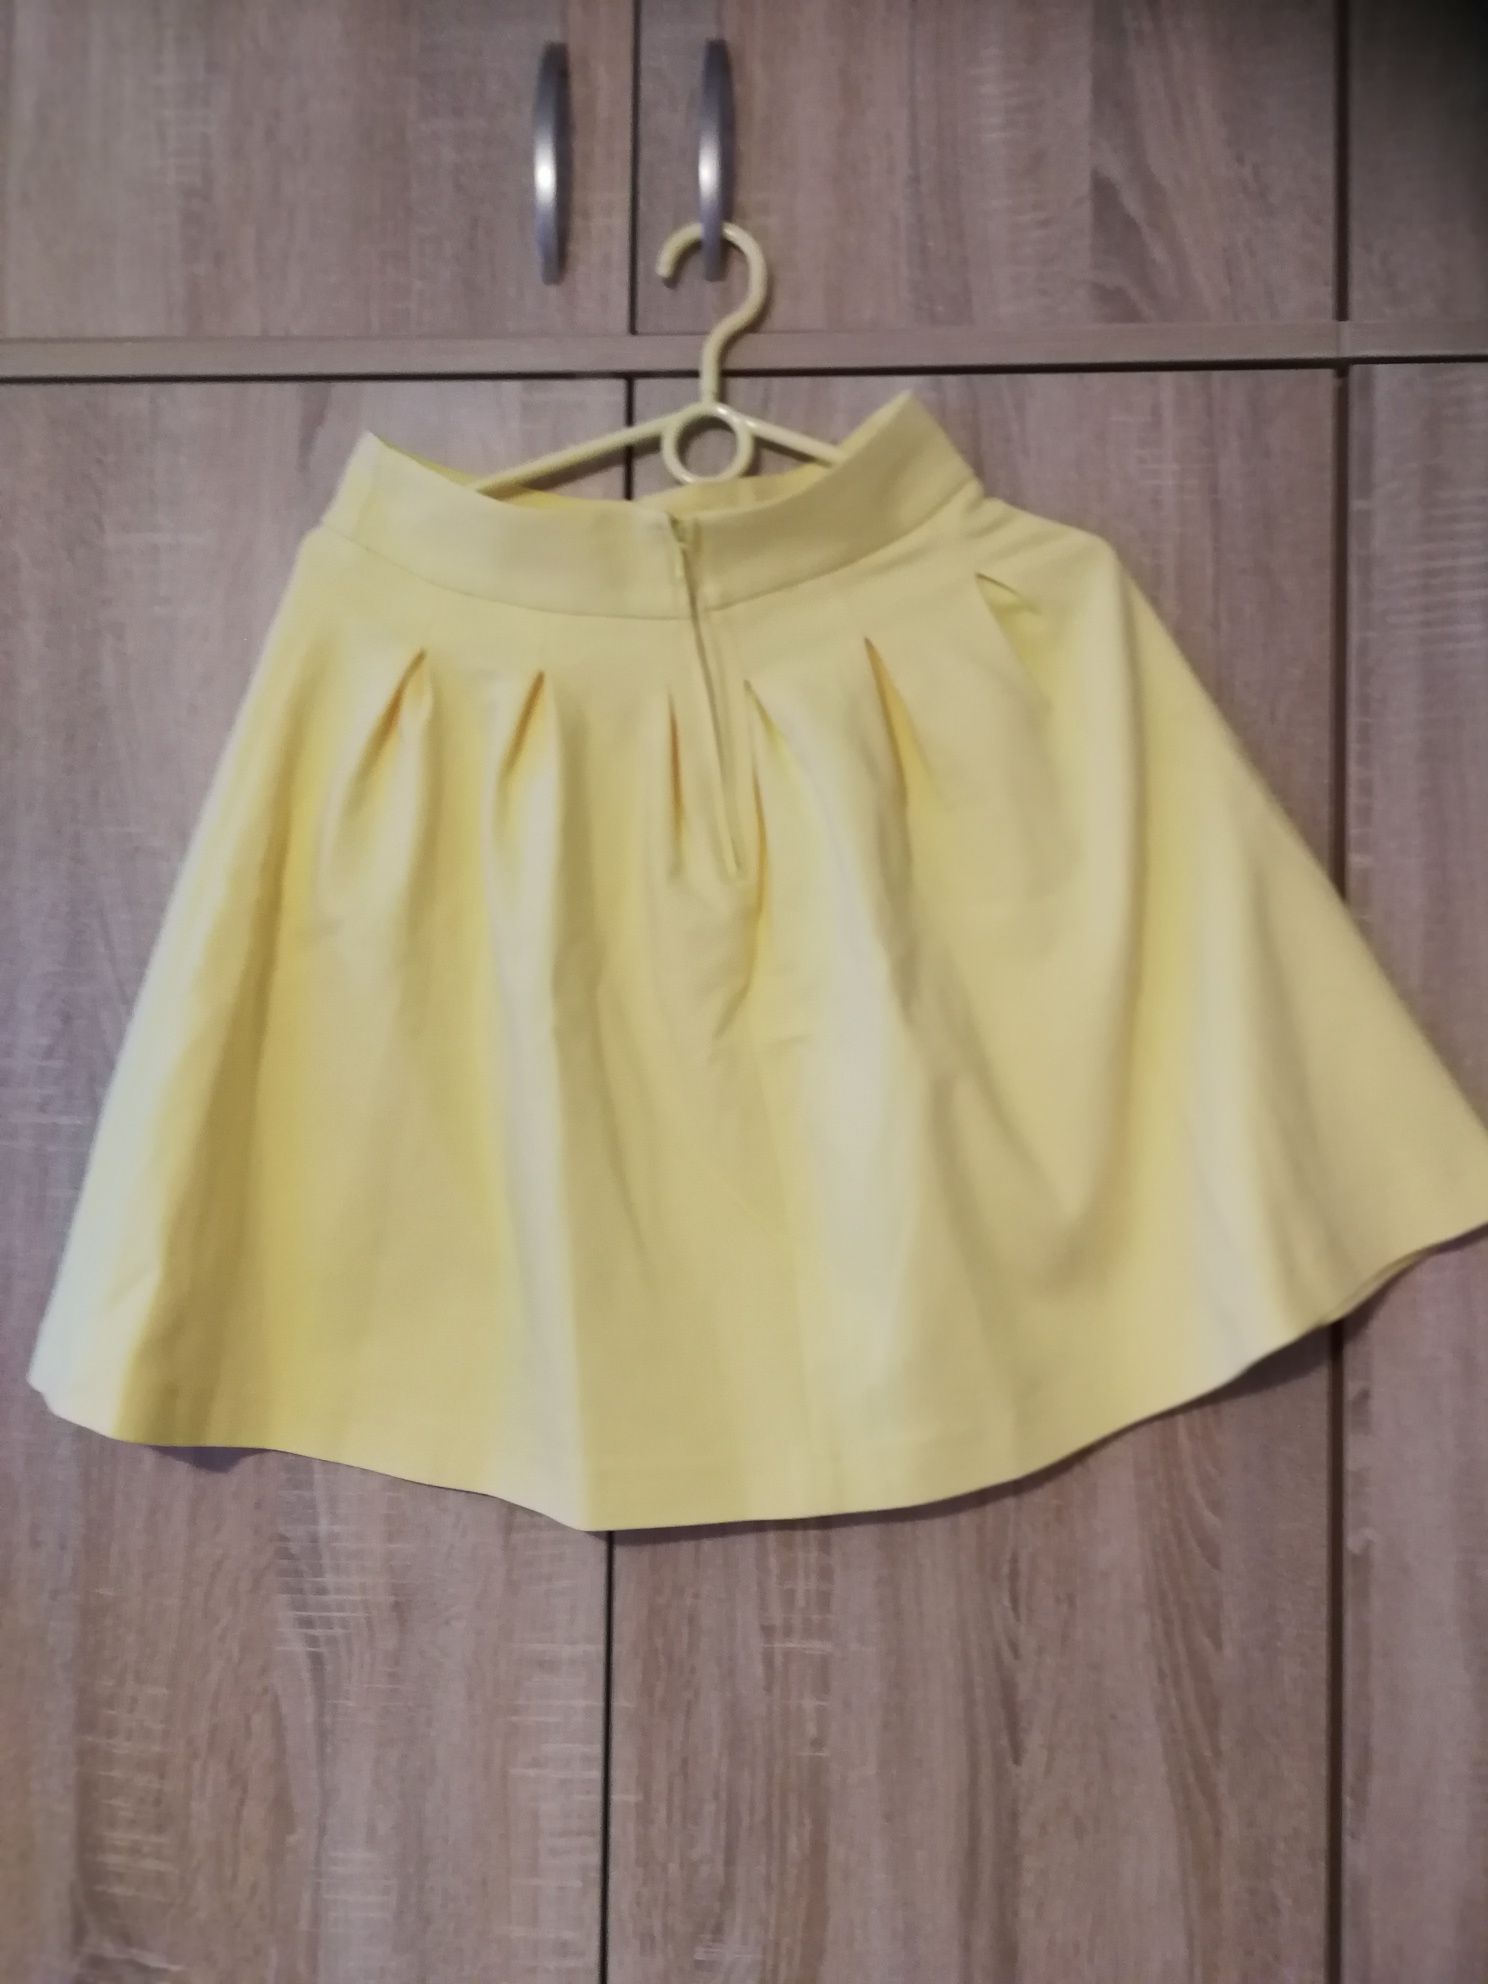 Spódnica Orsay w wiosennym ciepłym żółtym kolorze